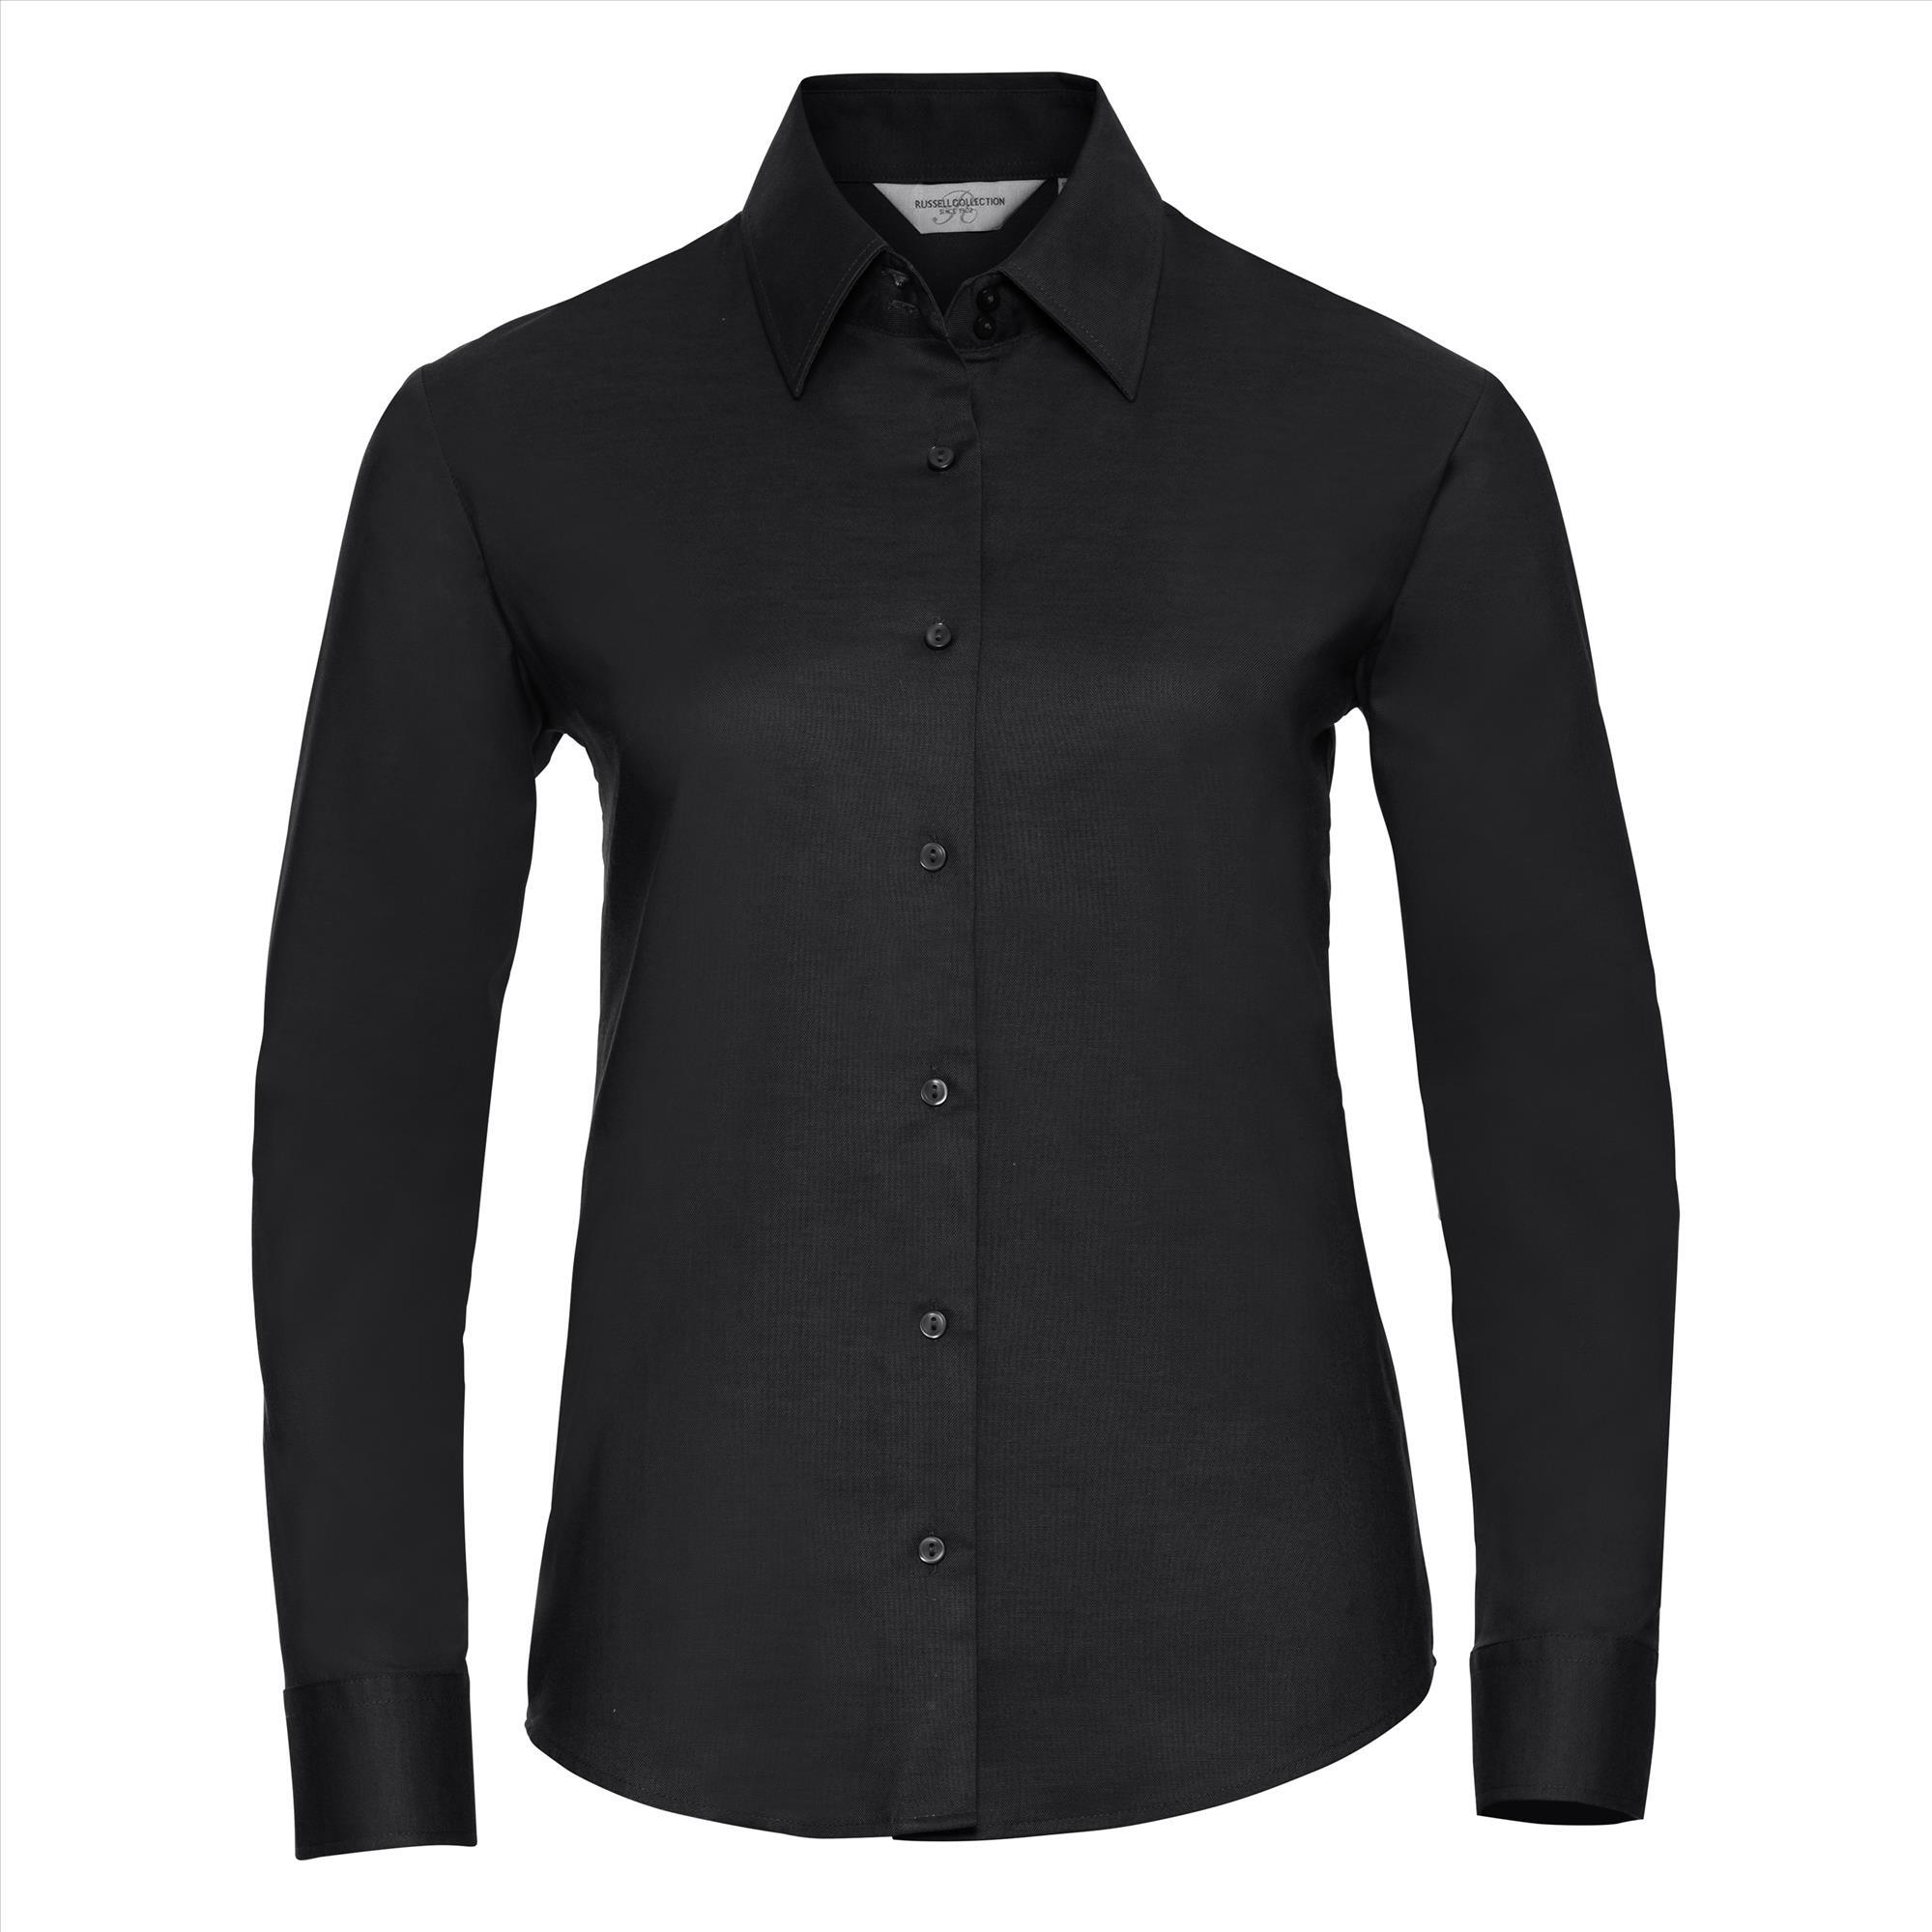 Getailleerde dames blouse zwart te personaliseren bedrijfslogo